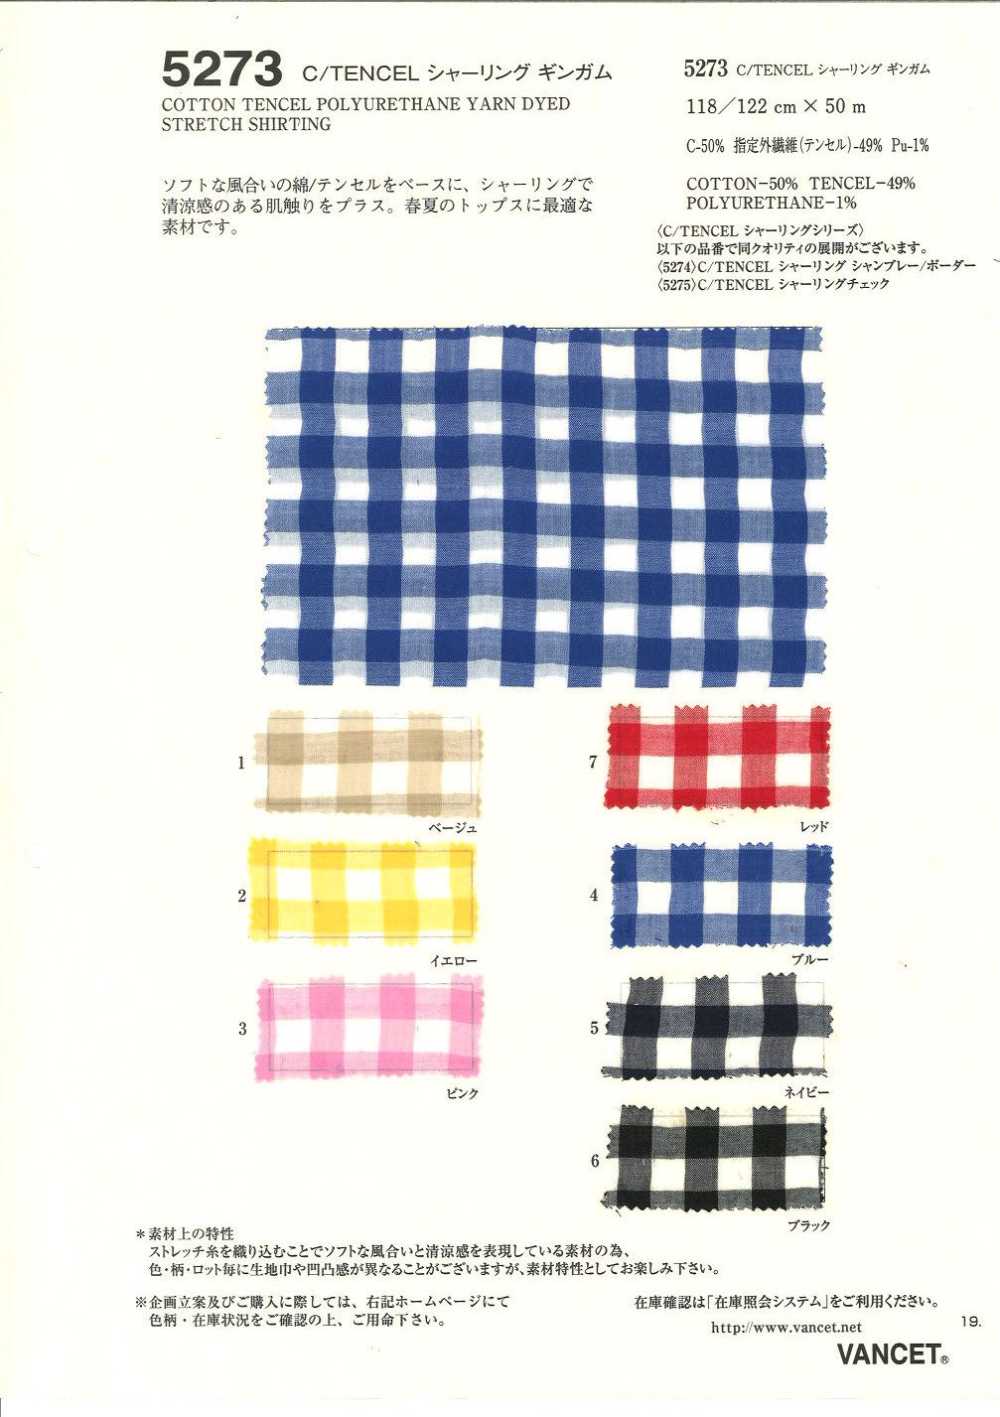 5273 C / TENCEL Vichy Fruncido[Fabrica Textil] VANCET